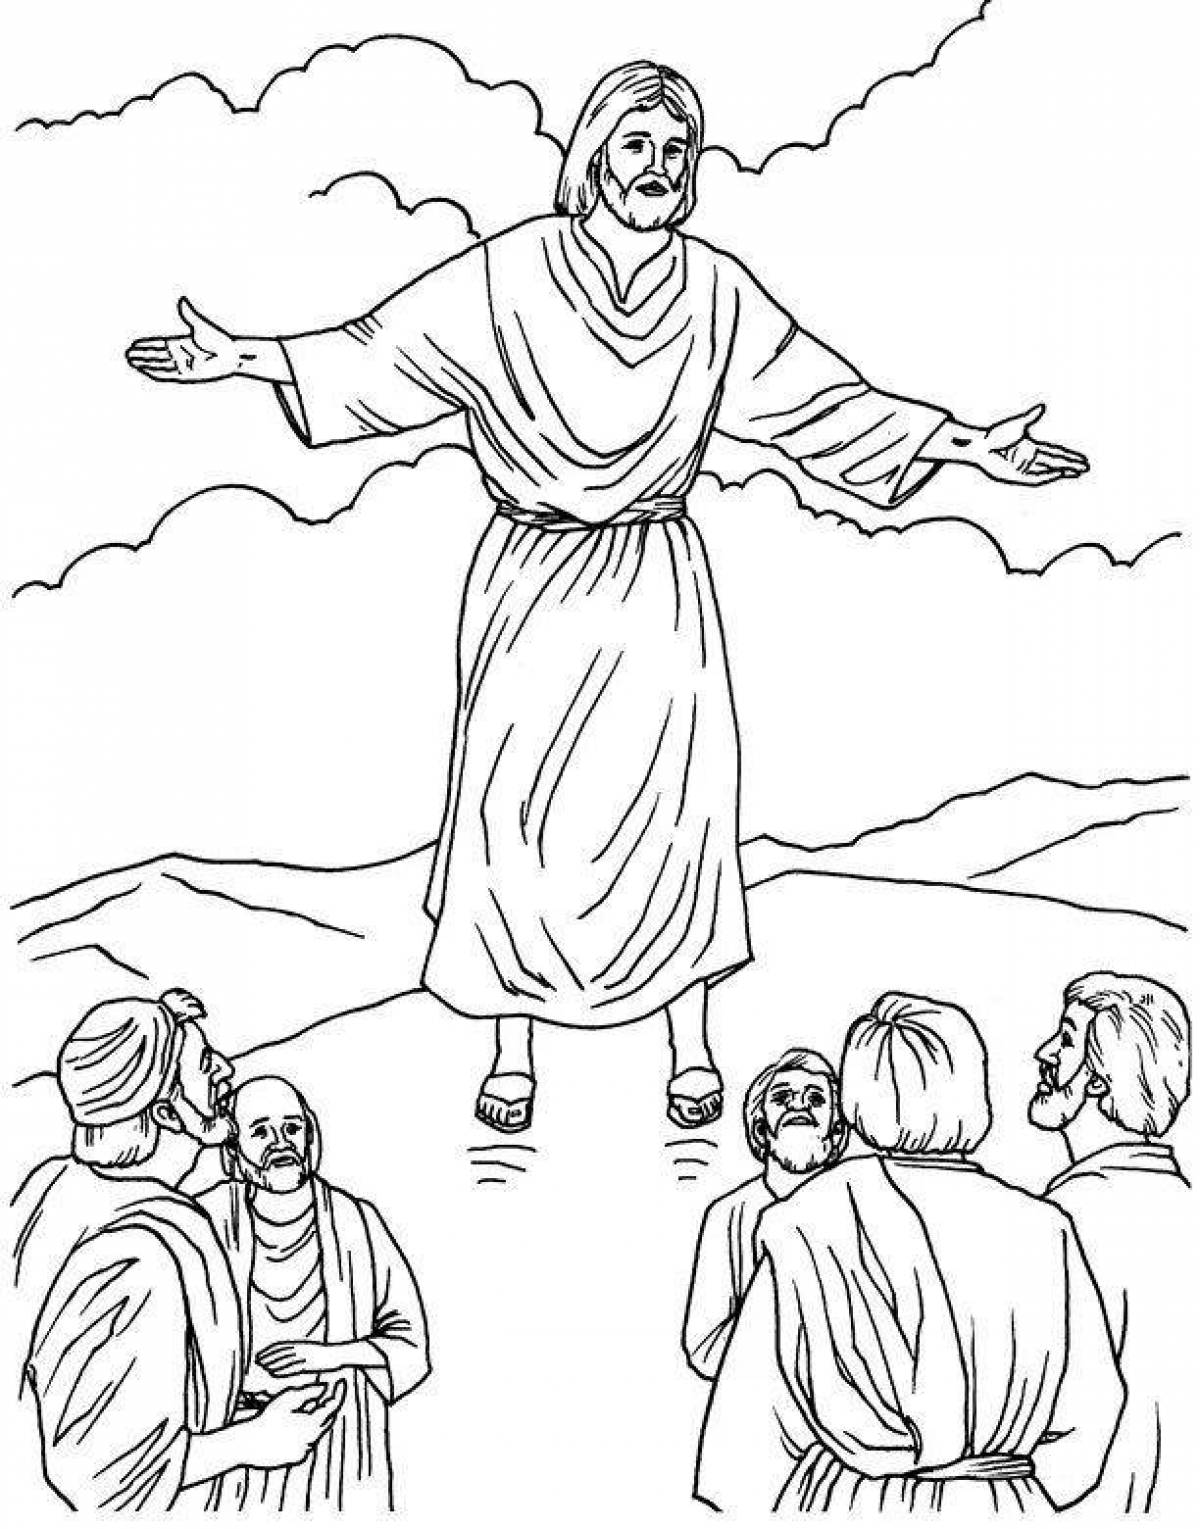 Рисунок на библейскую тему